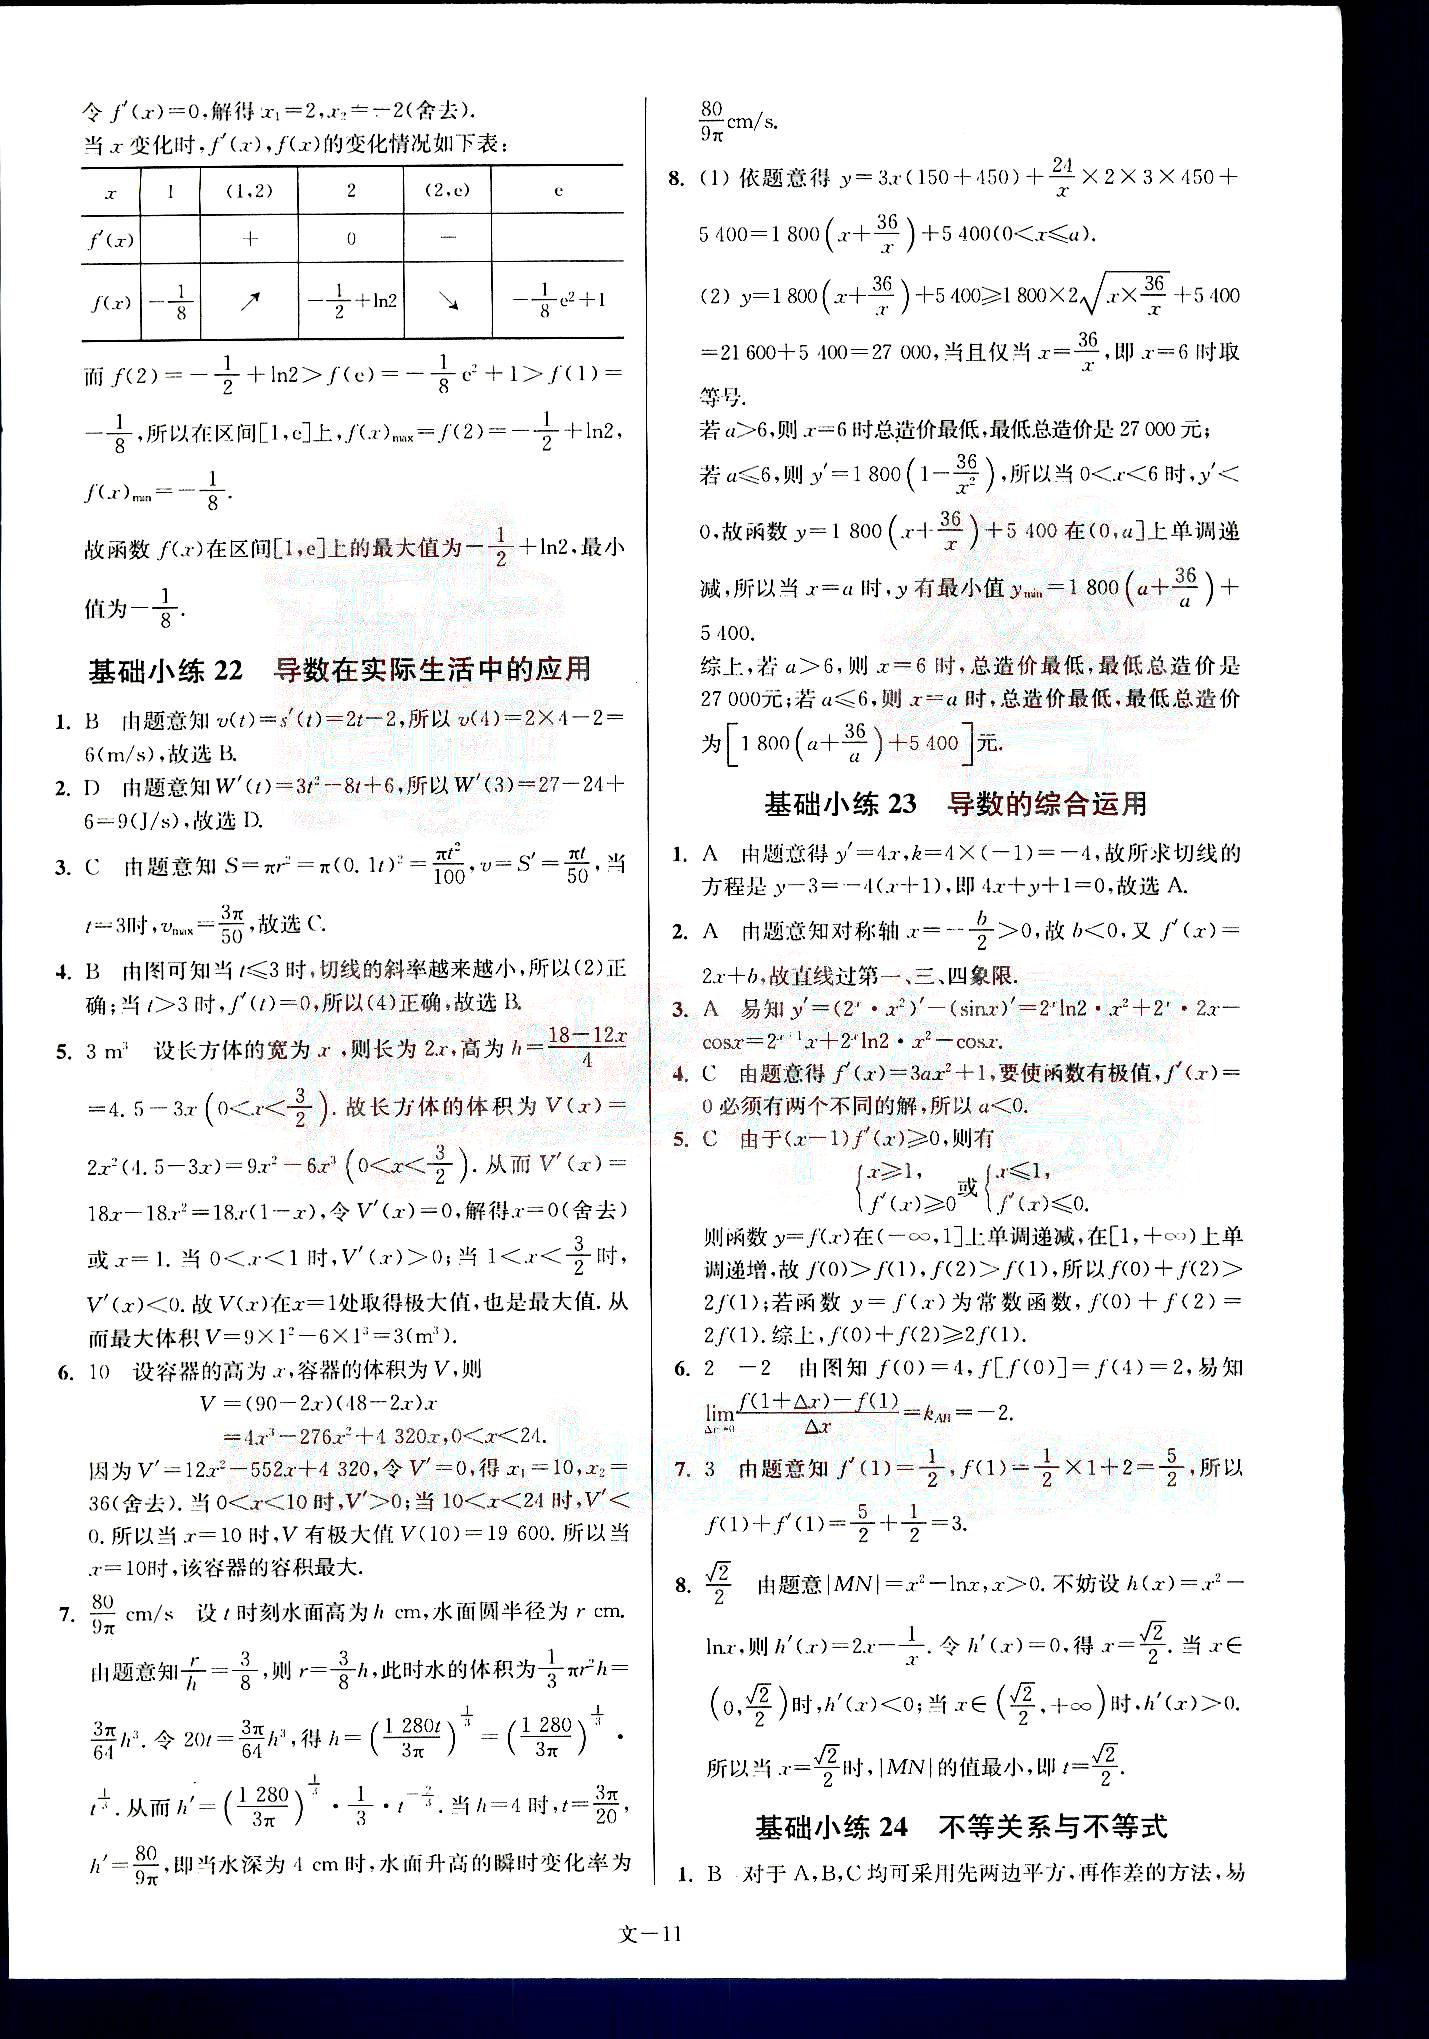 小题狂做-高考数学-文科-最基础篇南京大学出版社 第3部分 [1]